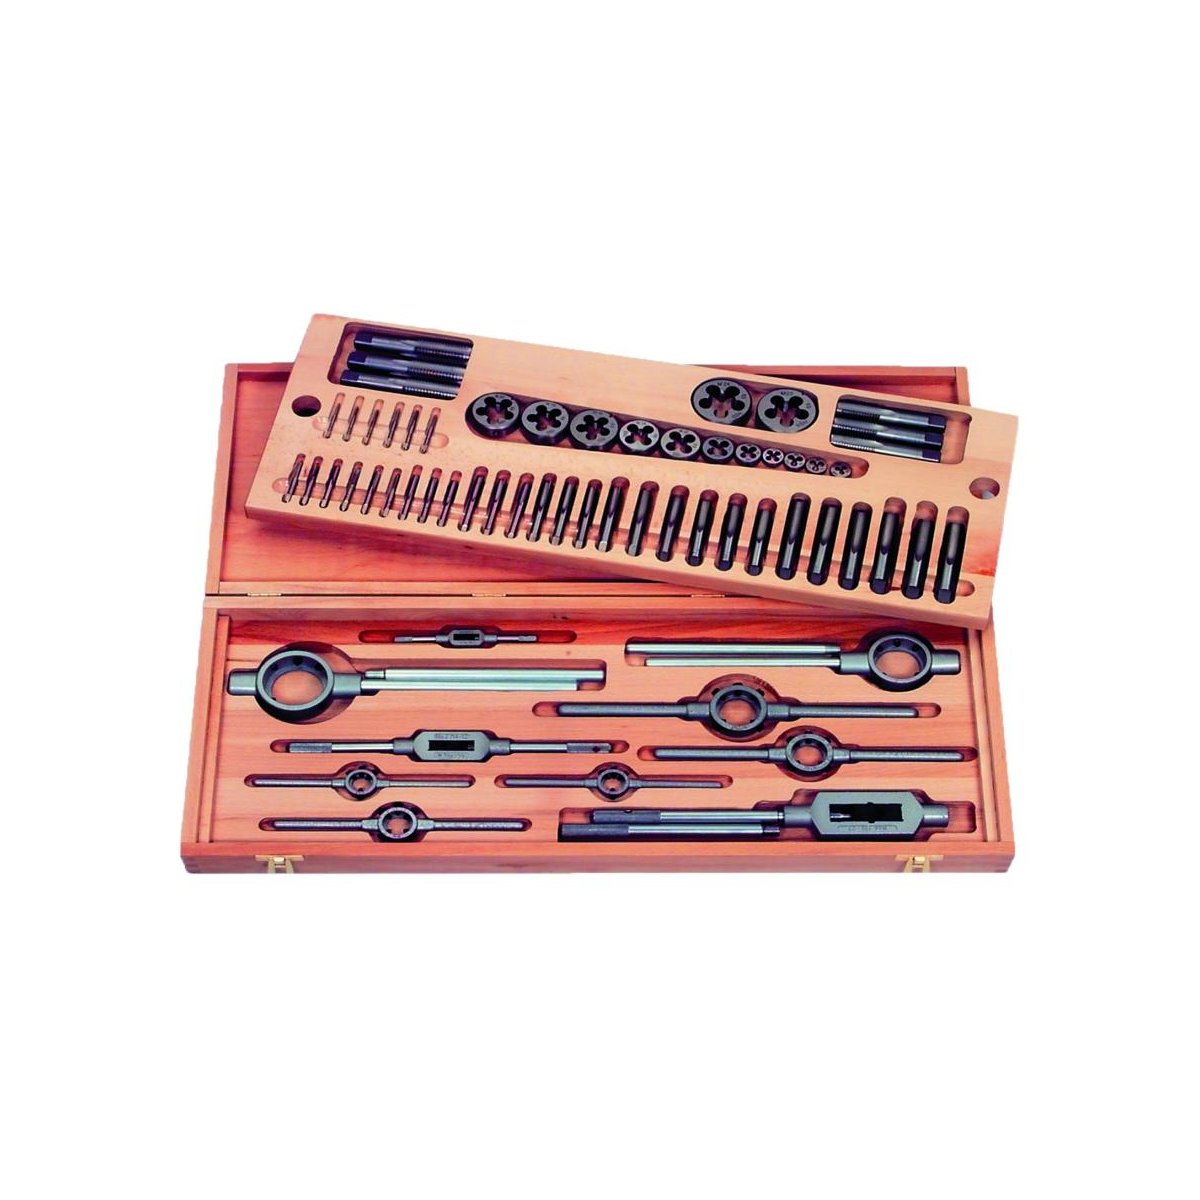 Набор резьбонарезного инструмента No 6015 HSS, 54 пр., BSW 1/4 - 1 1/4, деревянный кейс